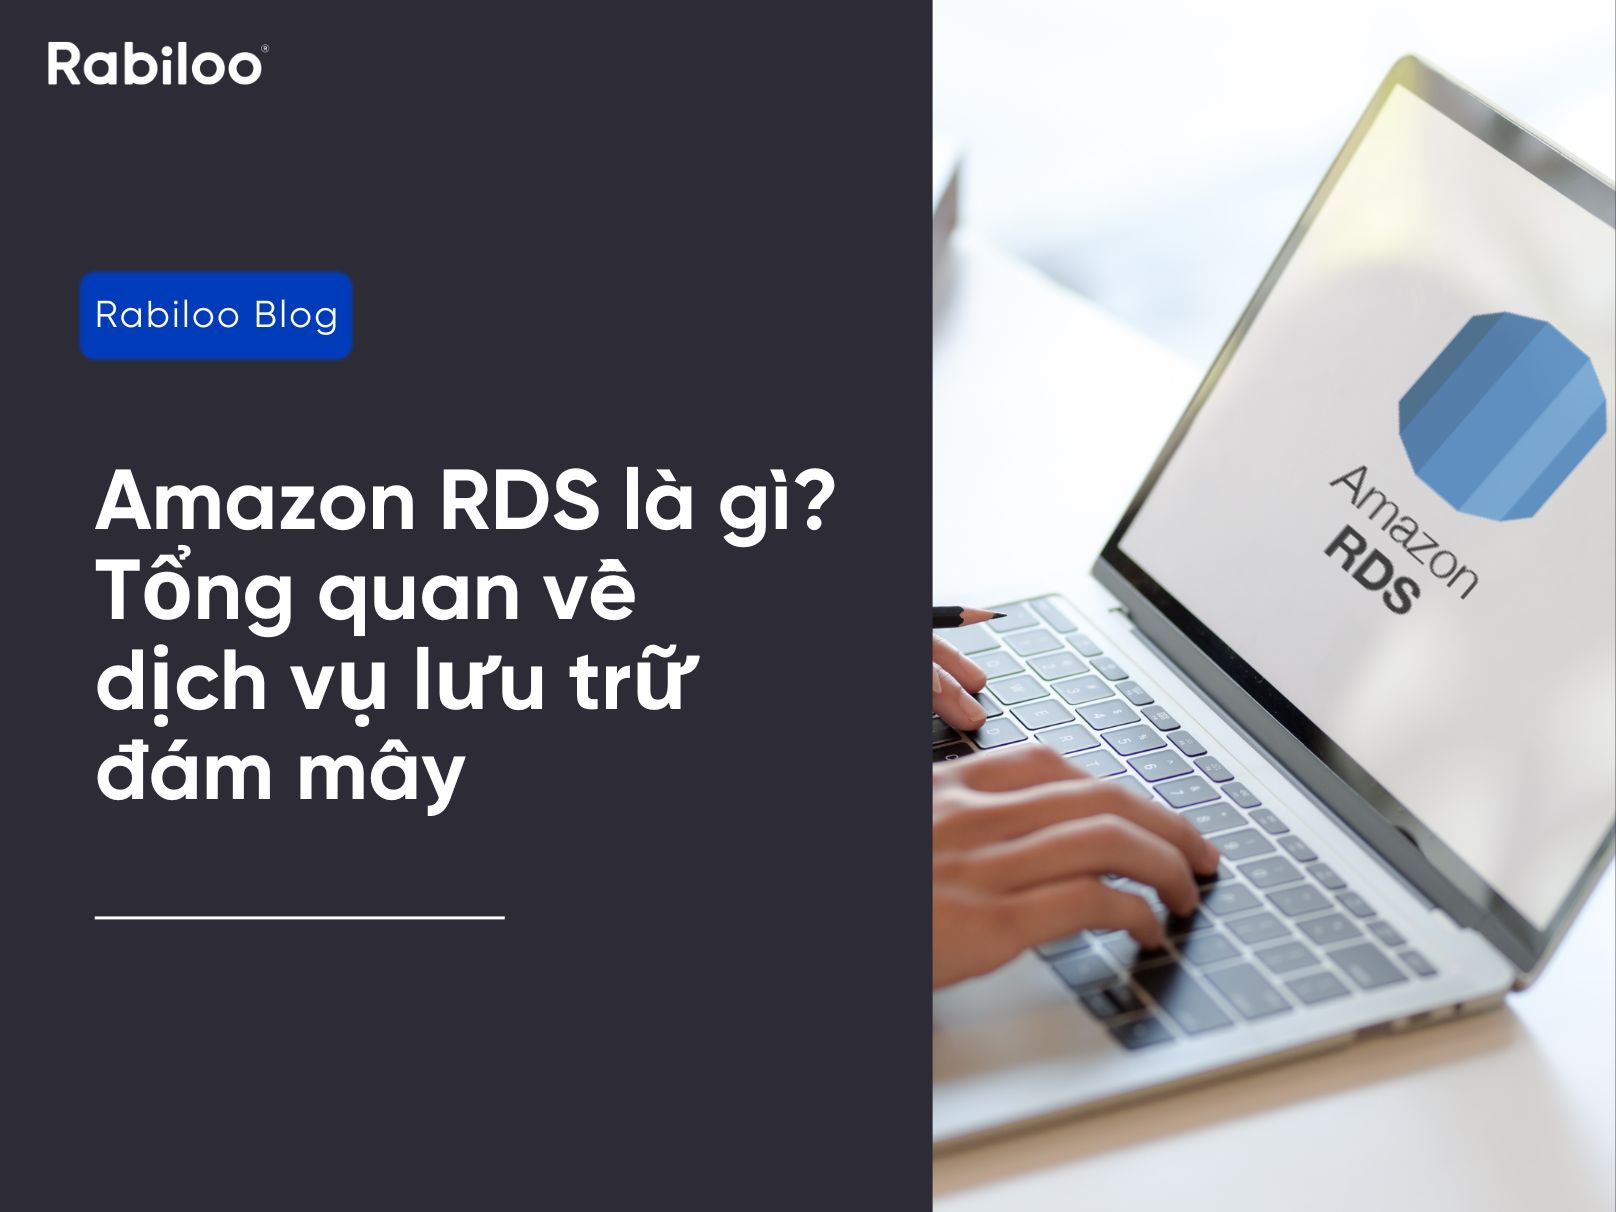 Amazon RDS là gì? Tổng quan về dịch vụ lưu trữ đám mây